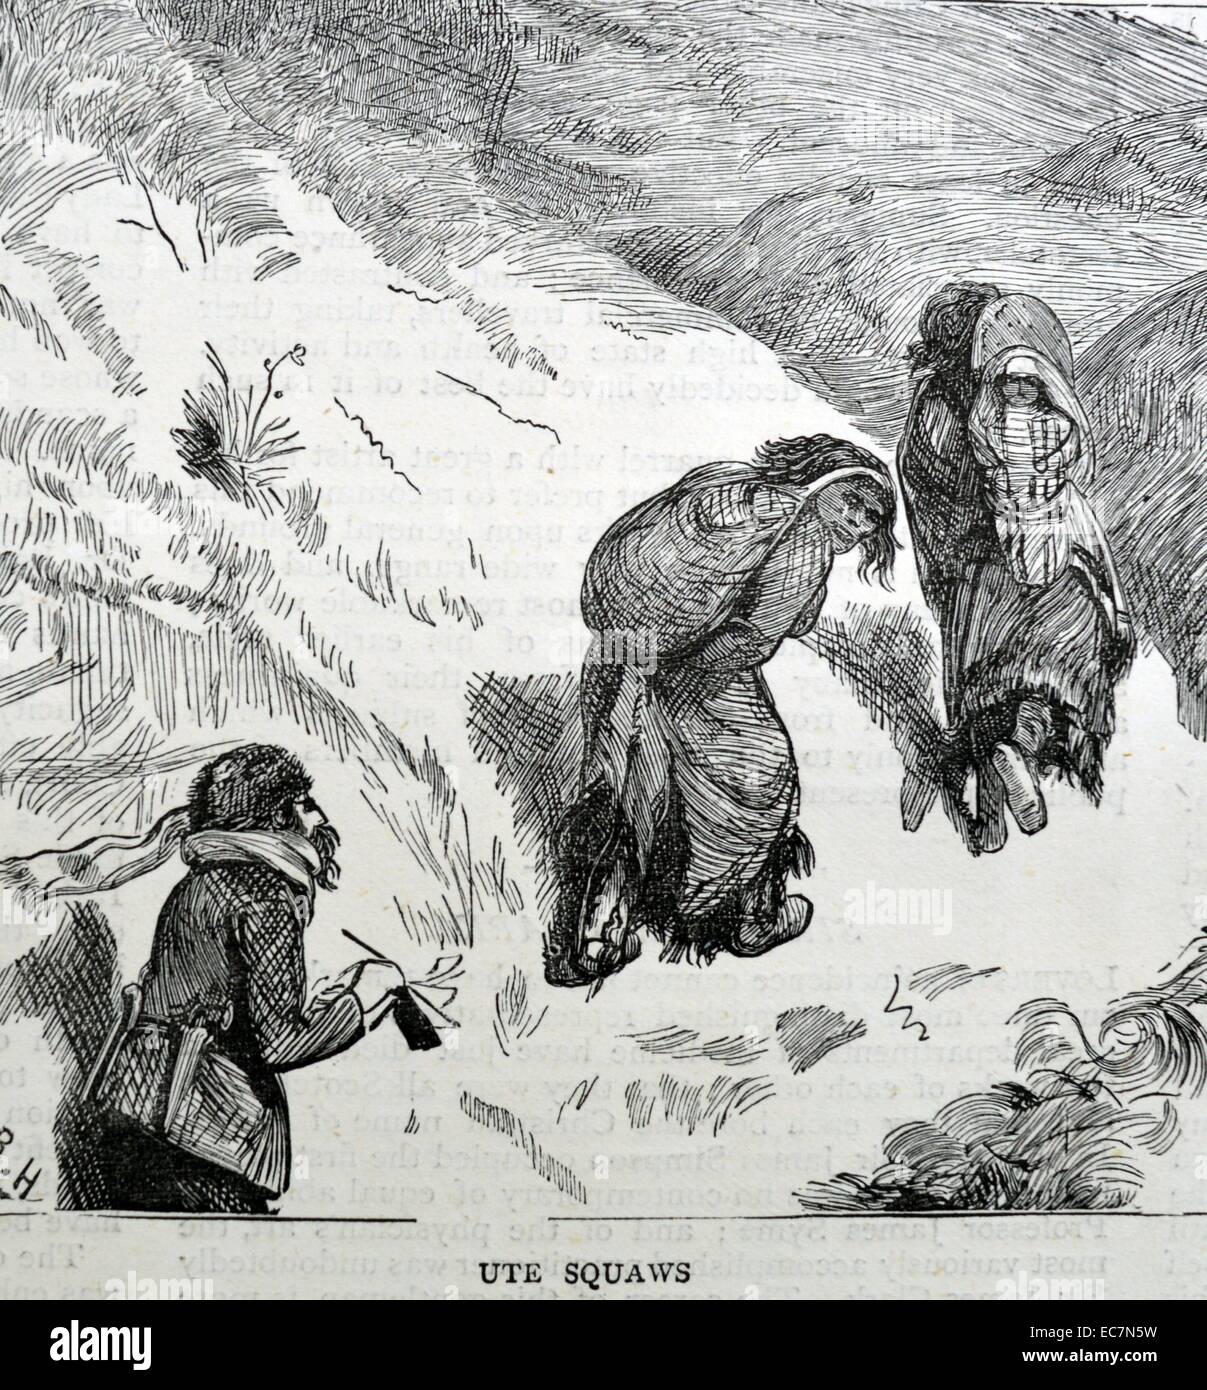 Kupferstich von Ute Squaws klettern. Vom 1870 Stockfoto